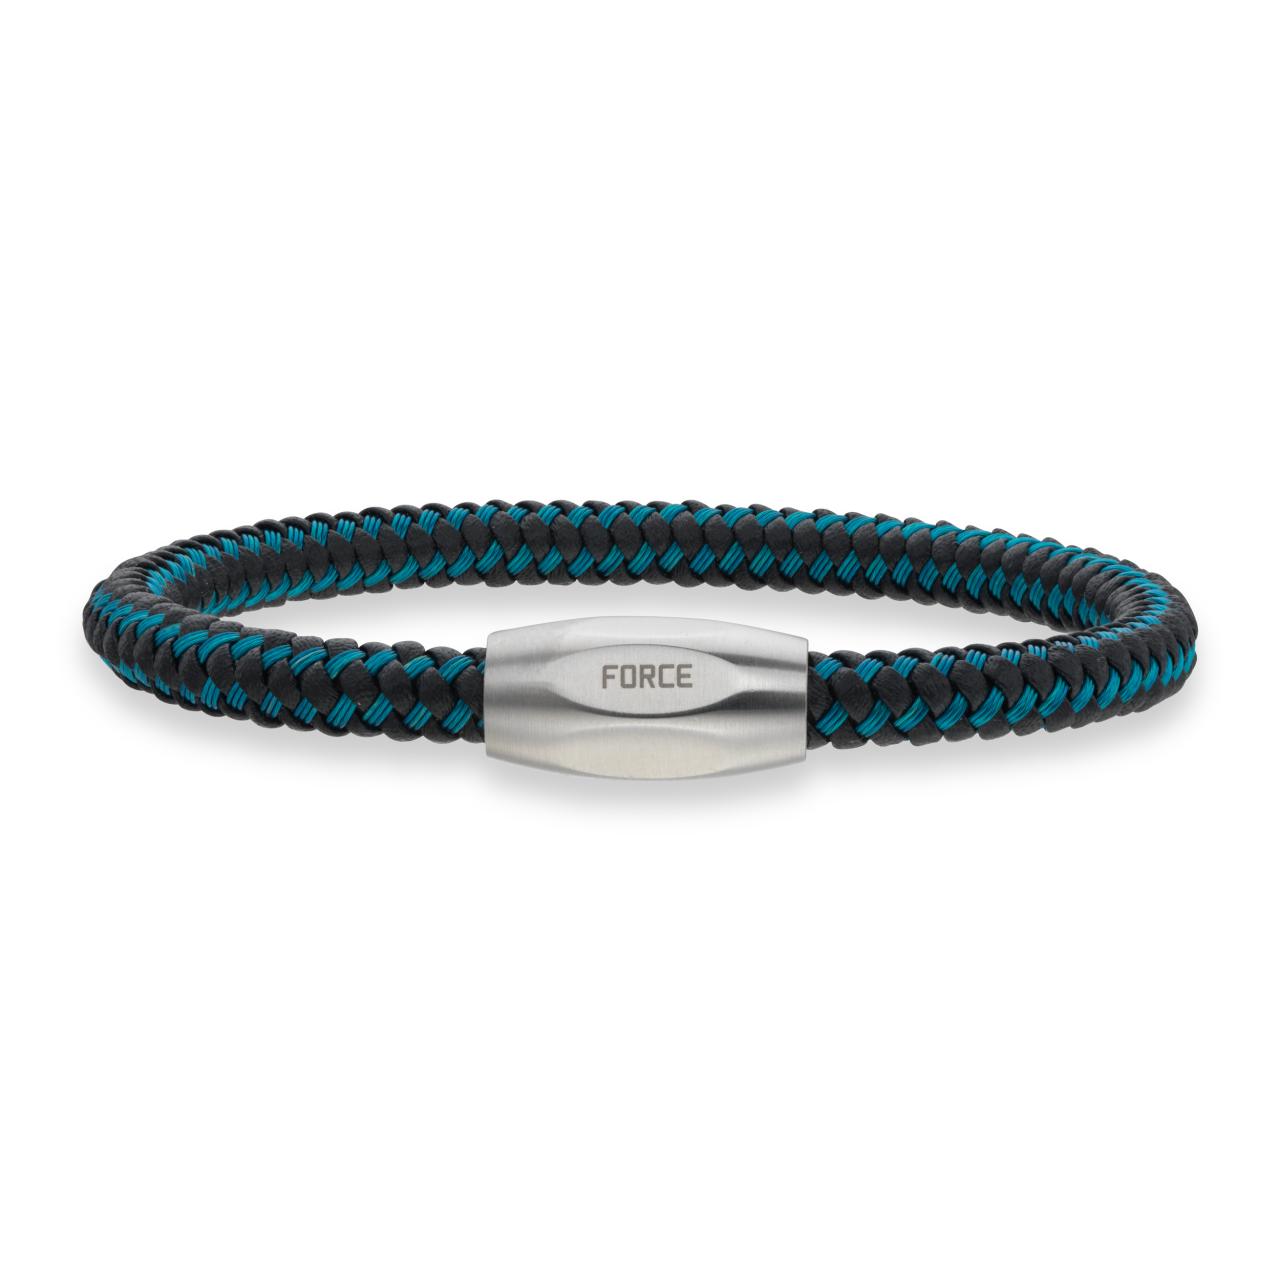 Force armbånd blå kabel/sort læder stål lås 23cm